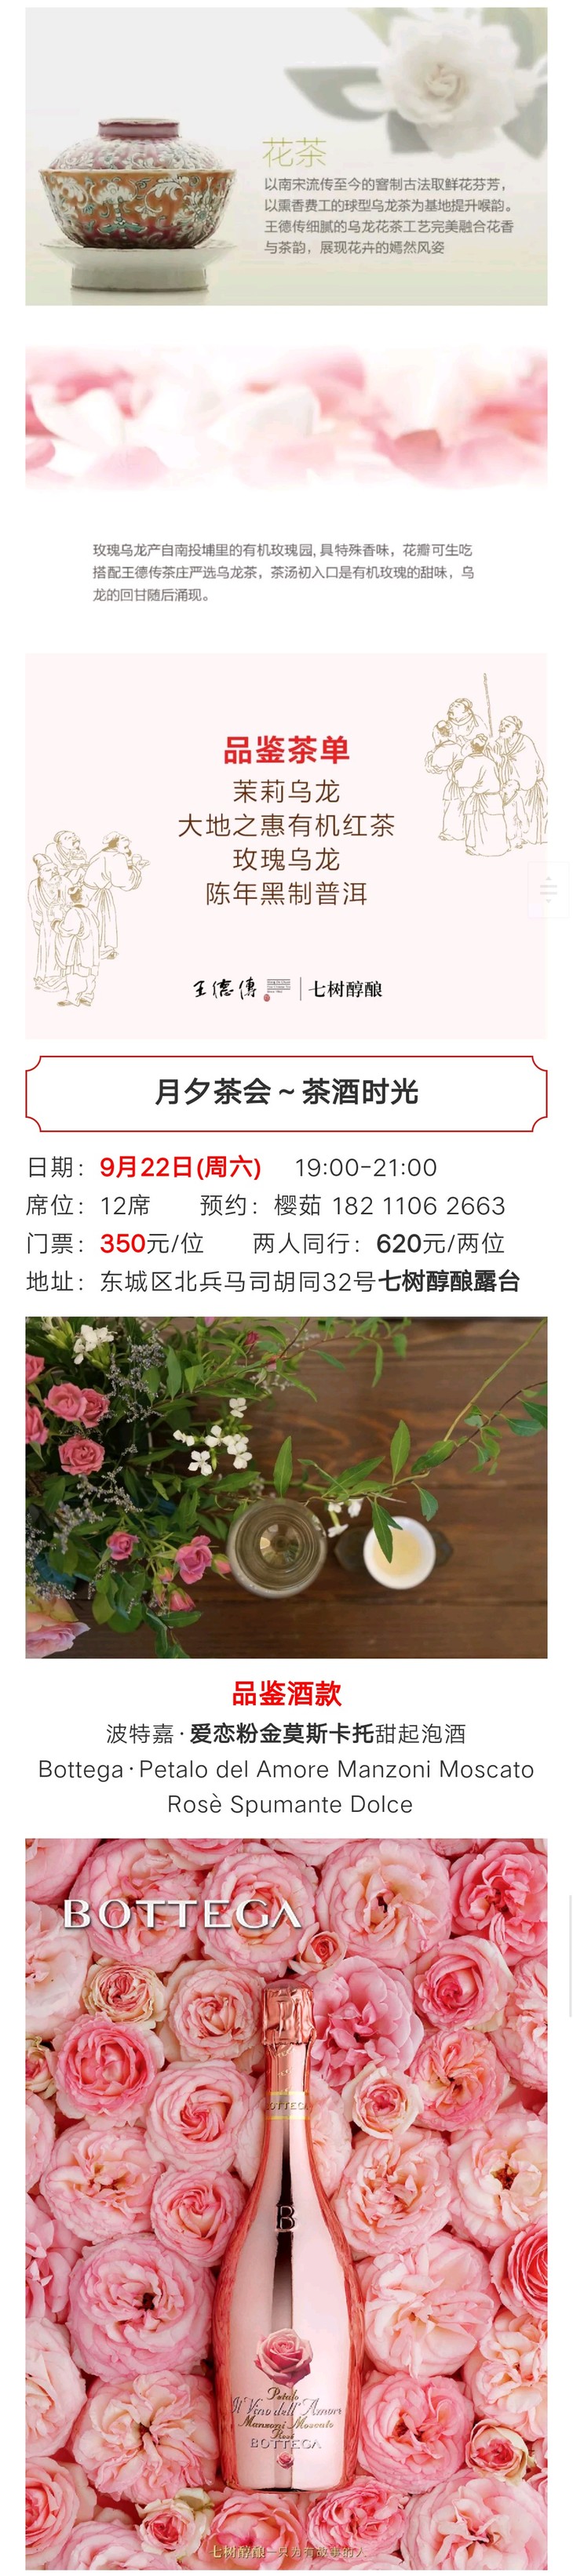 18年9月22日千里共婵娟举 杯 邀明月 七树醇酿茶酒生活